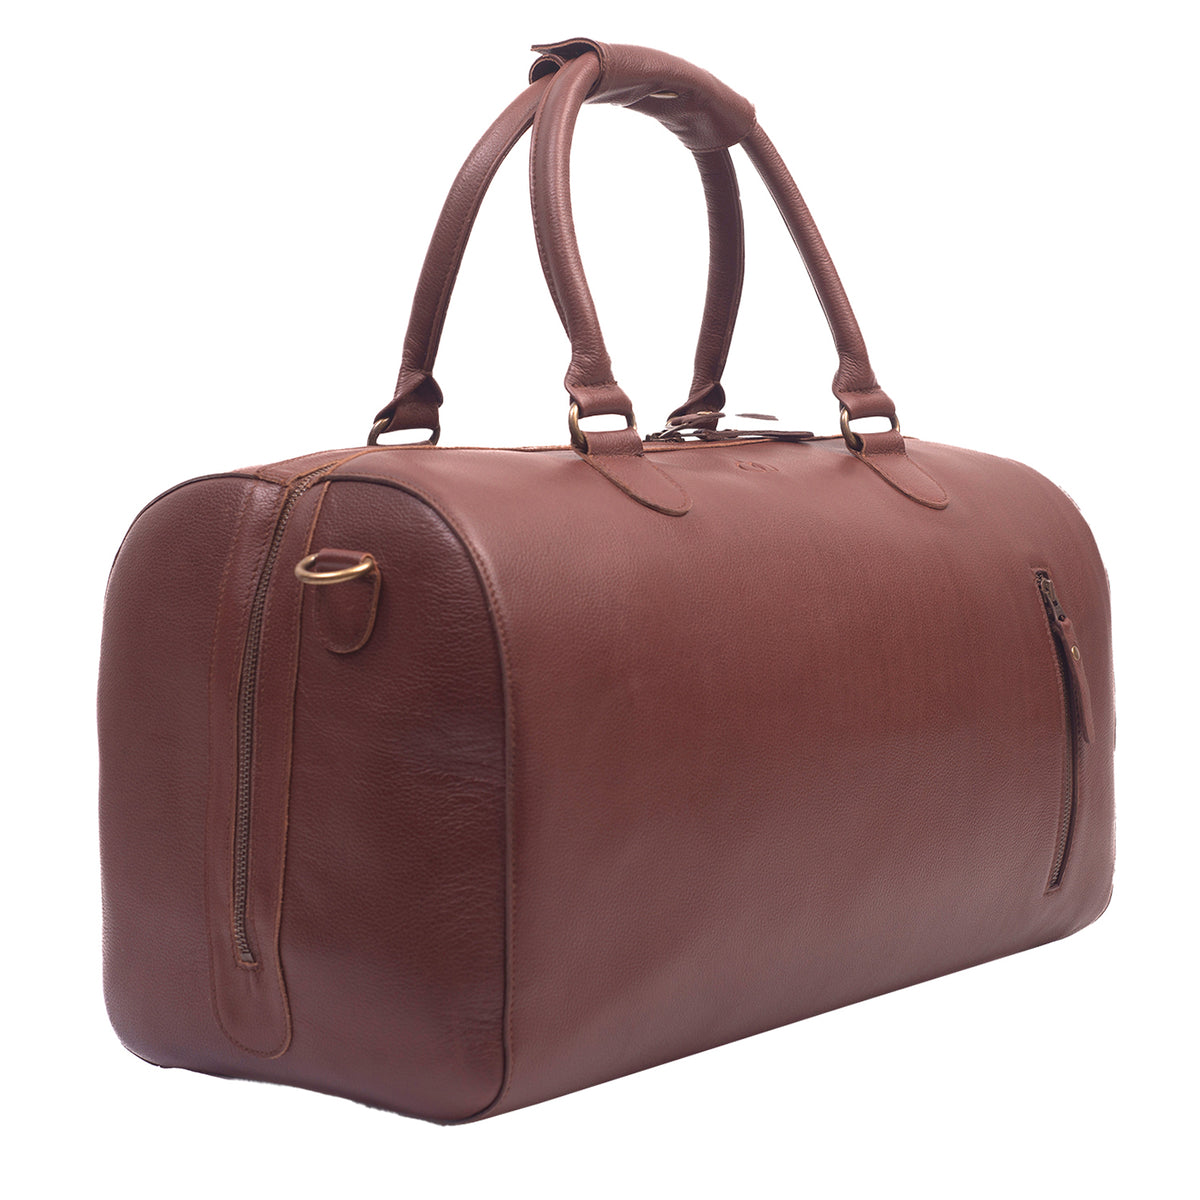 Harber Travel Bag Granite Brown